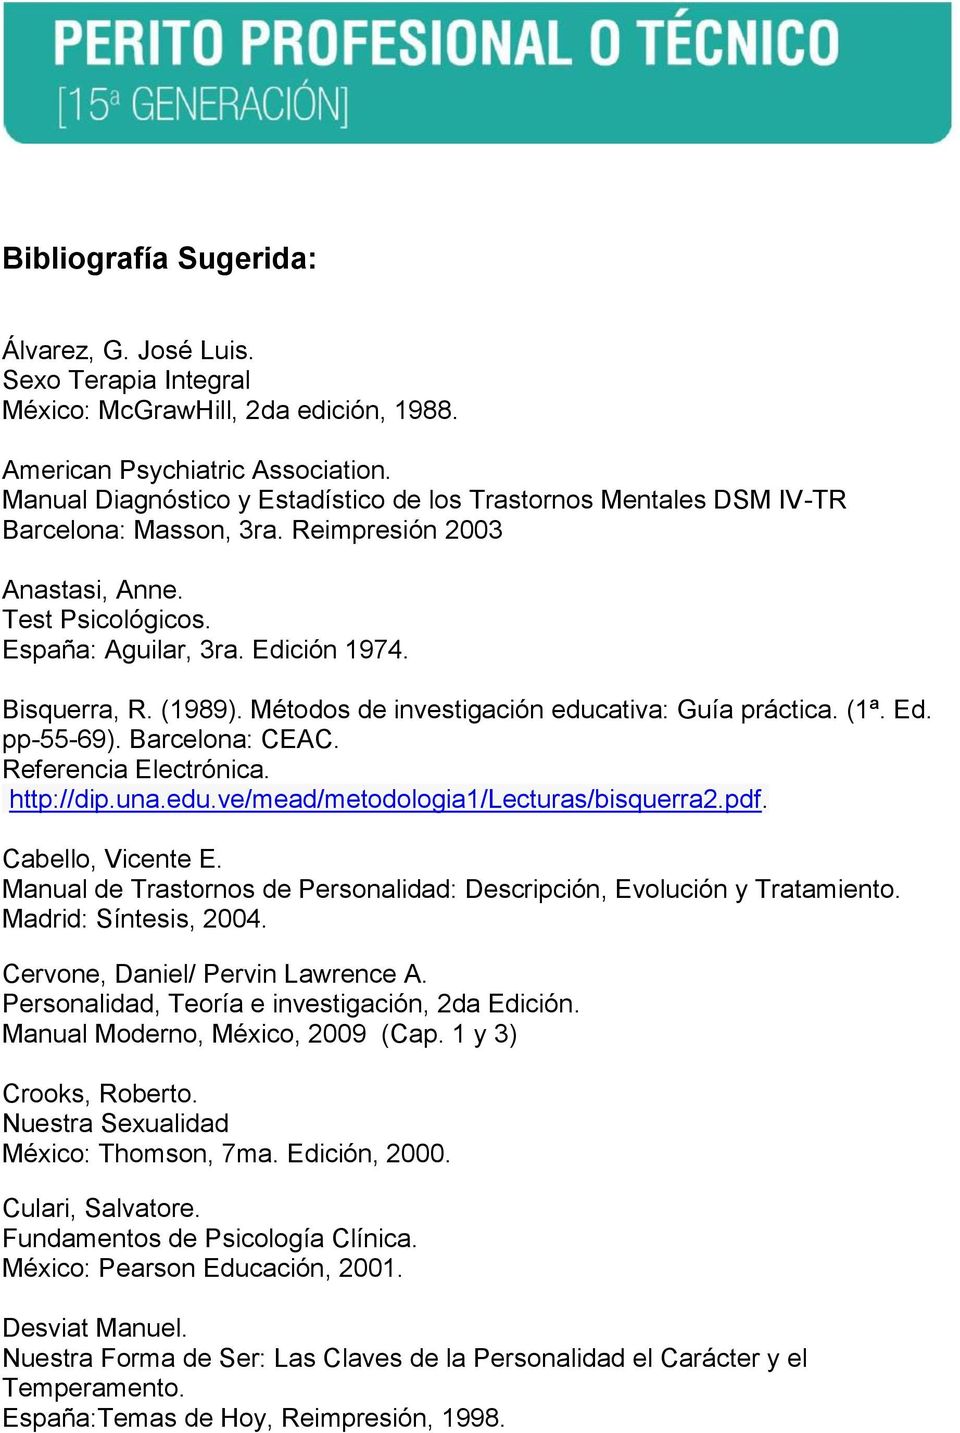 (1989). Métodos de investigación educativa: Guía práctica. (1ª. Ed. pp-55-69). Barcelona: CEAC. Referencia Electrónica. http://dip.una.edu.ve/mead/metodologia1/lecturas/bisquerra2.pdf.